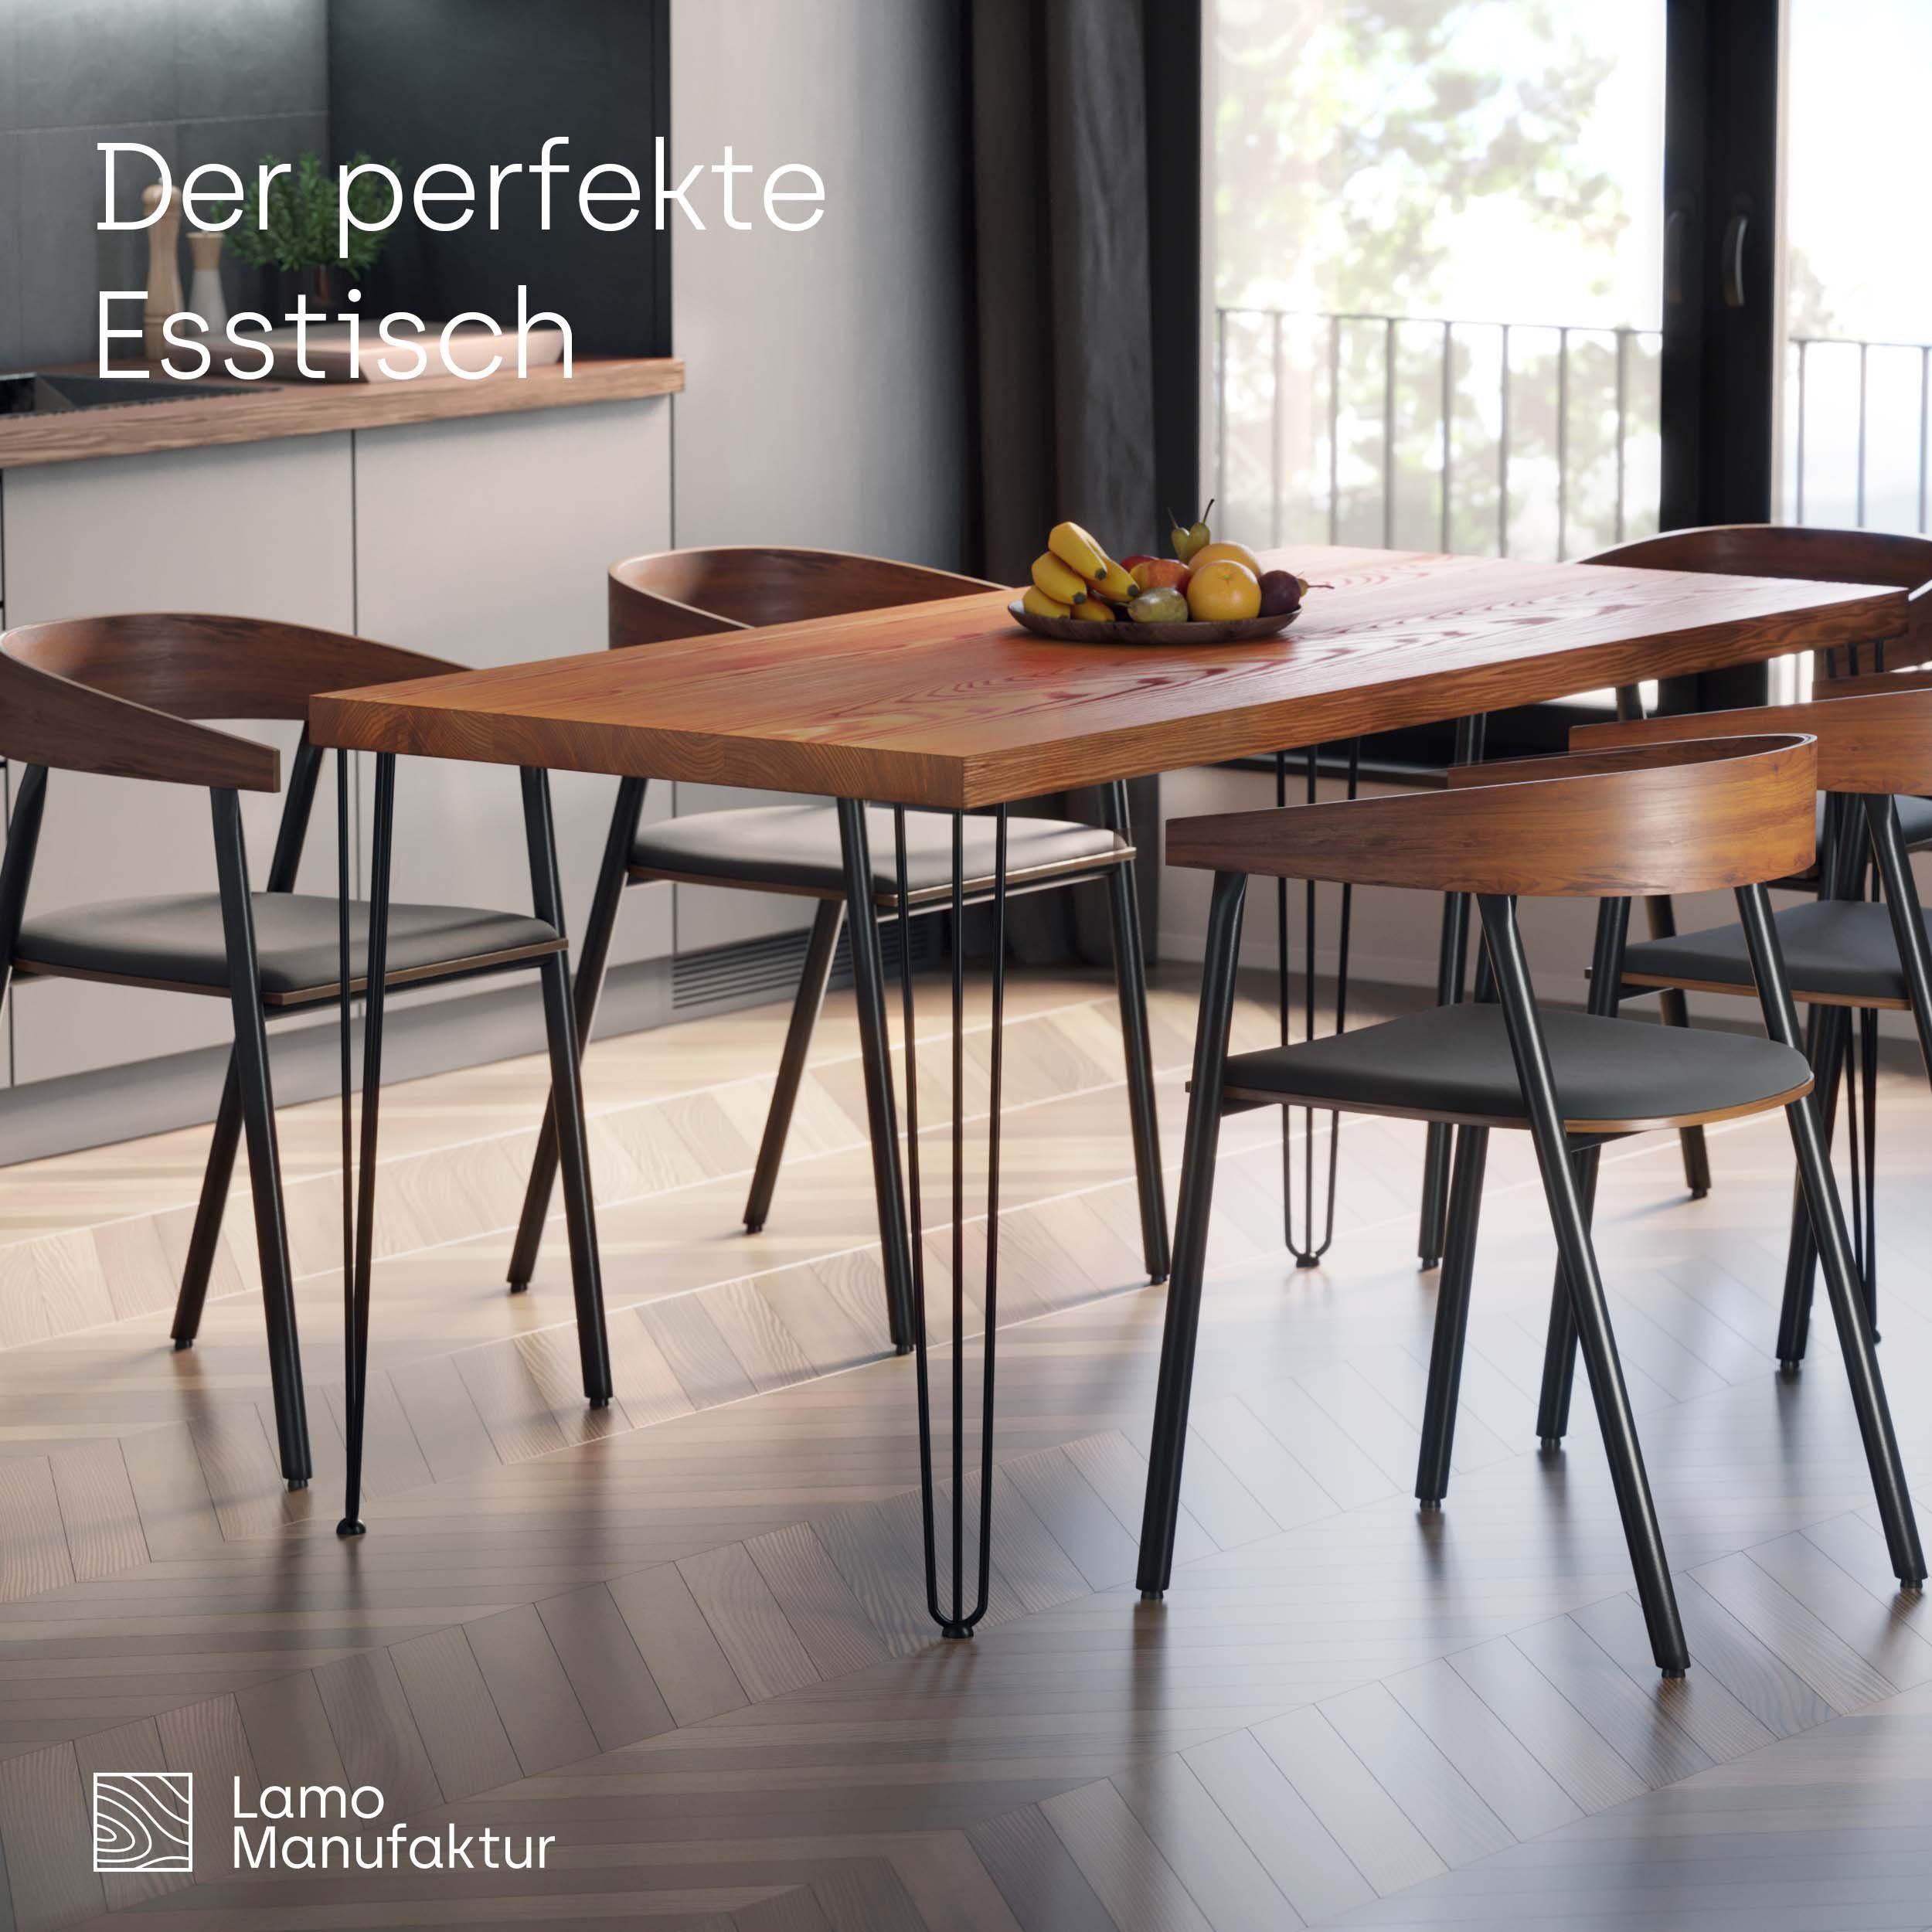 Rustikal LAMO Manufaktur Massivholz Küchentisch Schwarz Esstisch | (1 Tischplatte inkl. gerade Tisch), Metallgestell Kante Creative